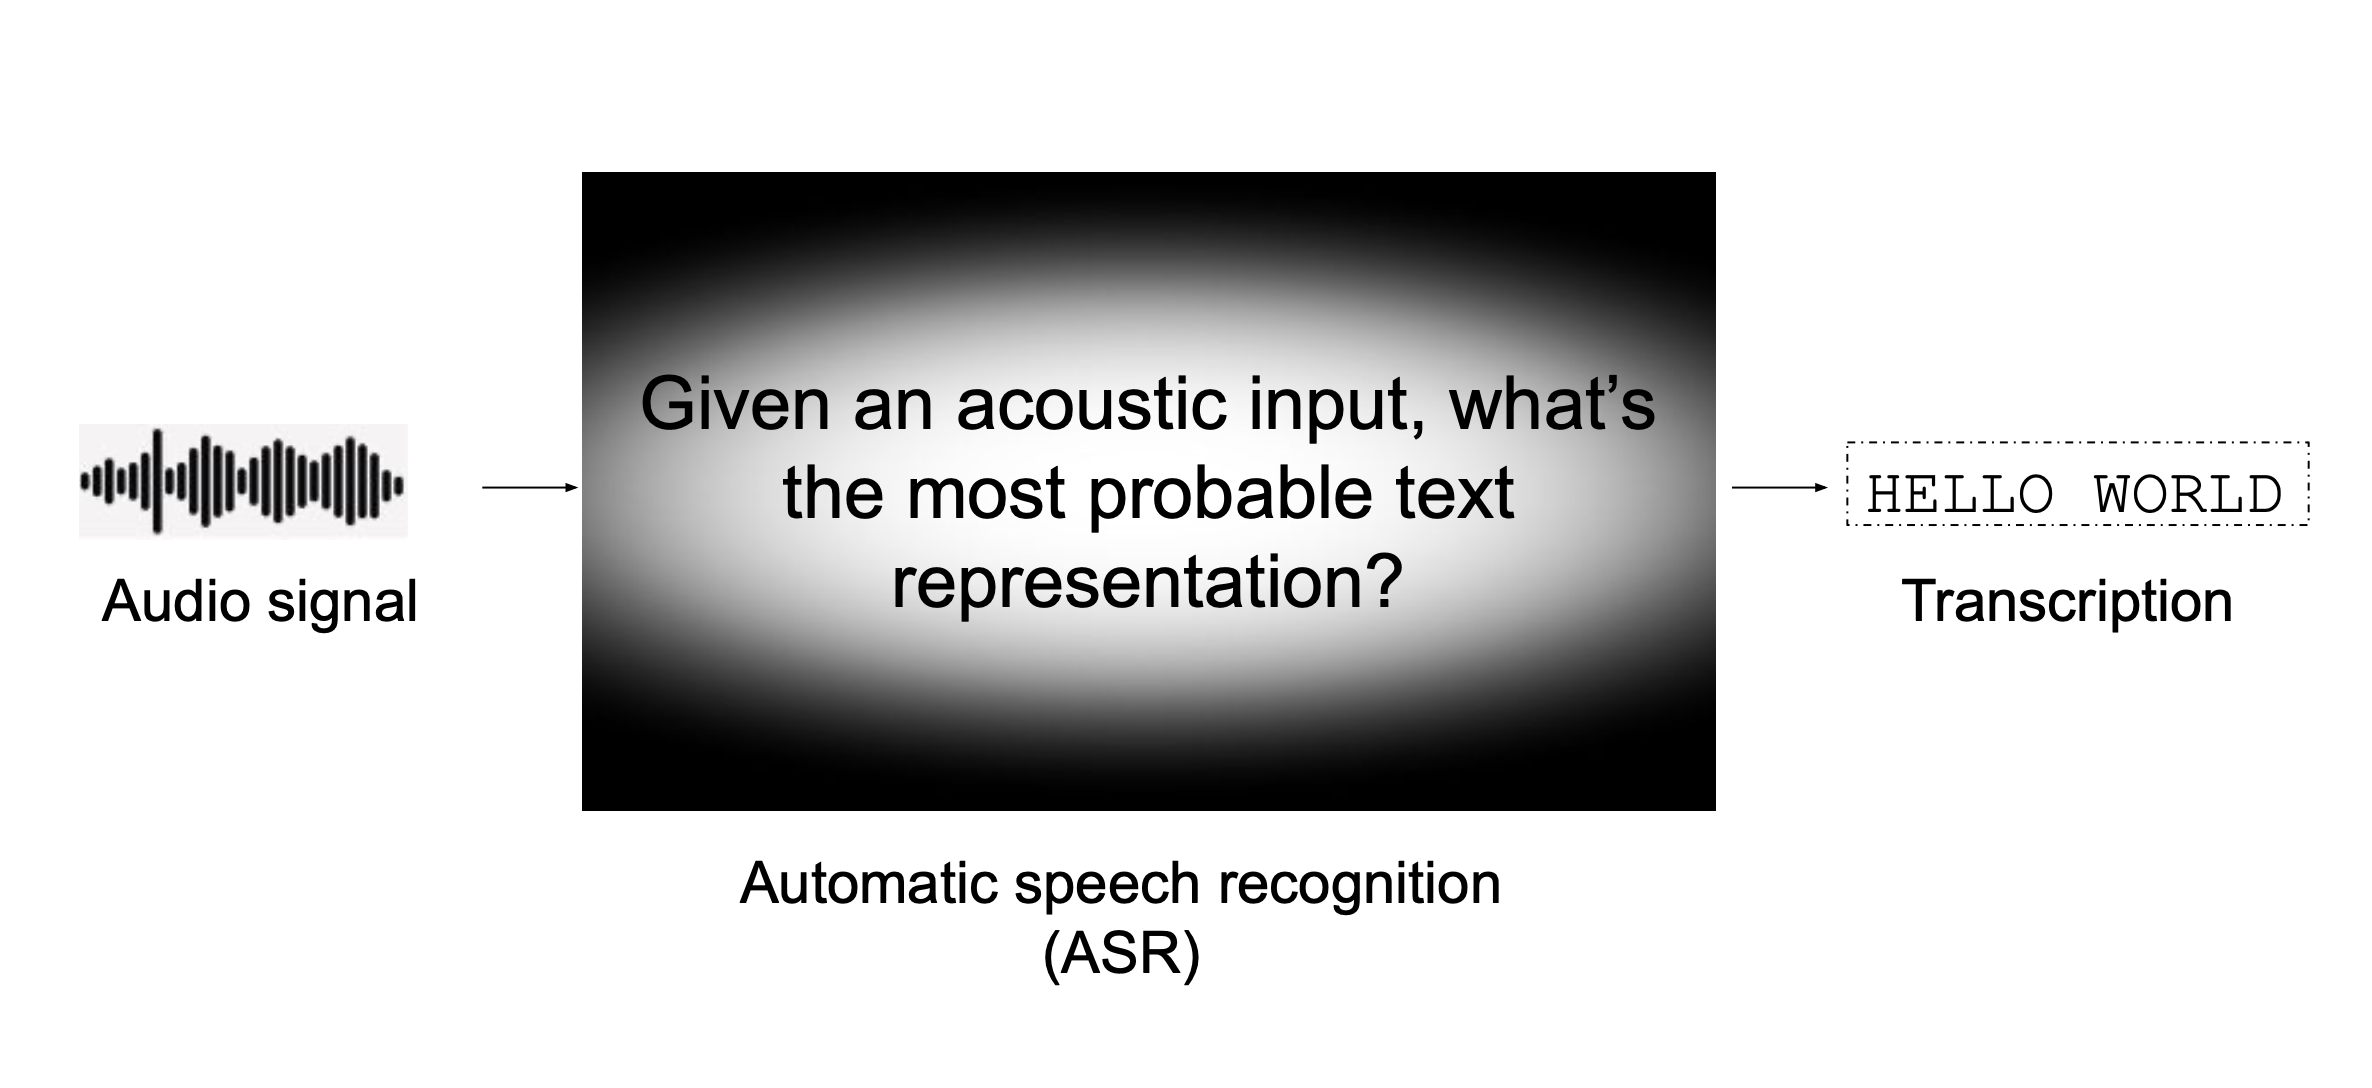 El reconocimiento automático de voz está modelando la pregunta "¿Cuál es la secuencia de palabras más probable entre todas las secuencias de palabras posibles dada una entrada acústica?"